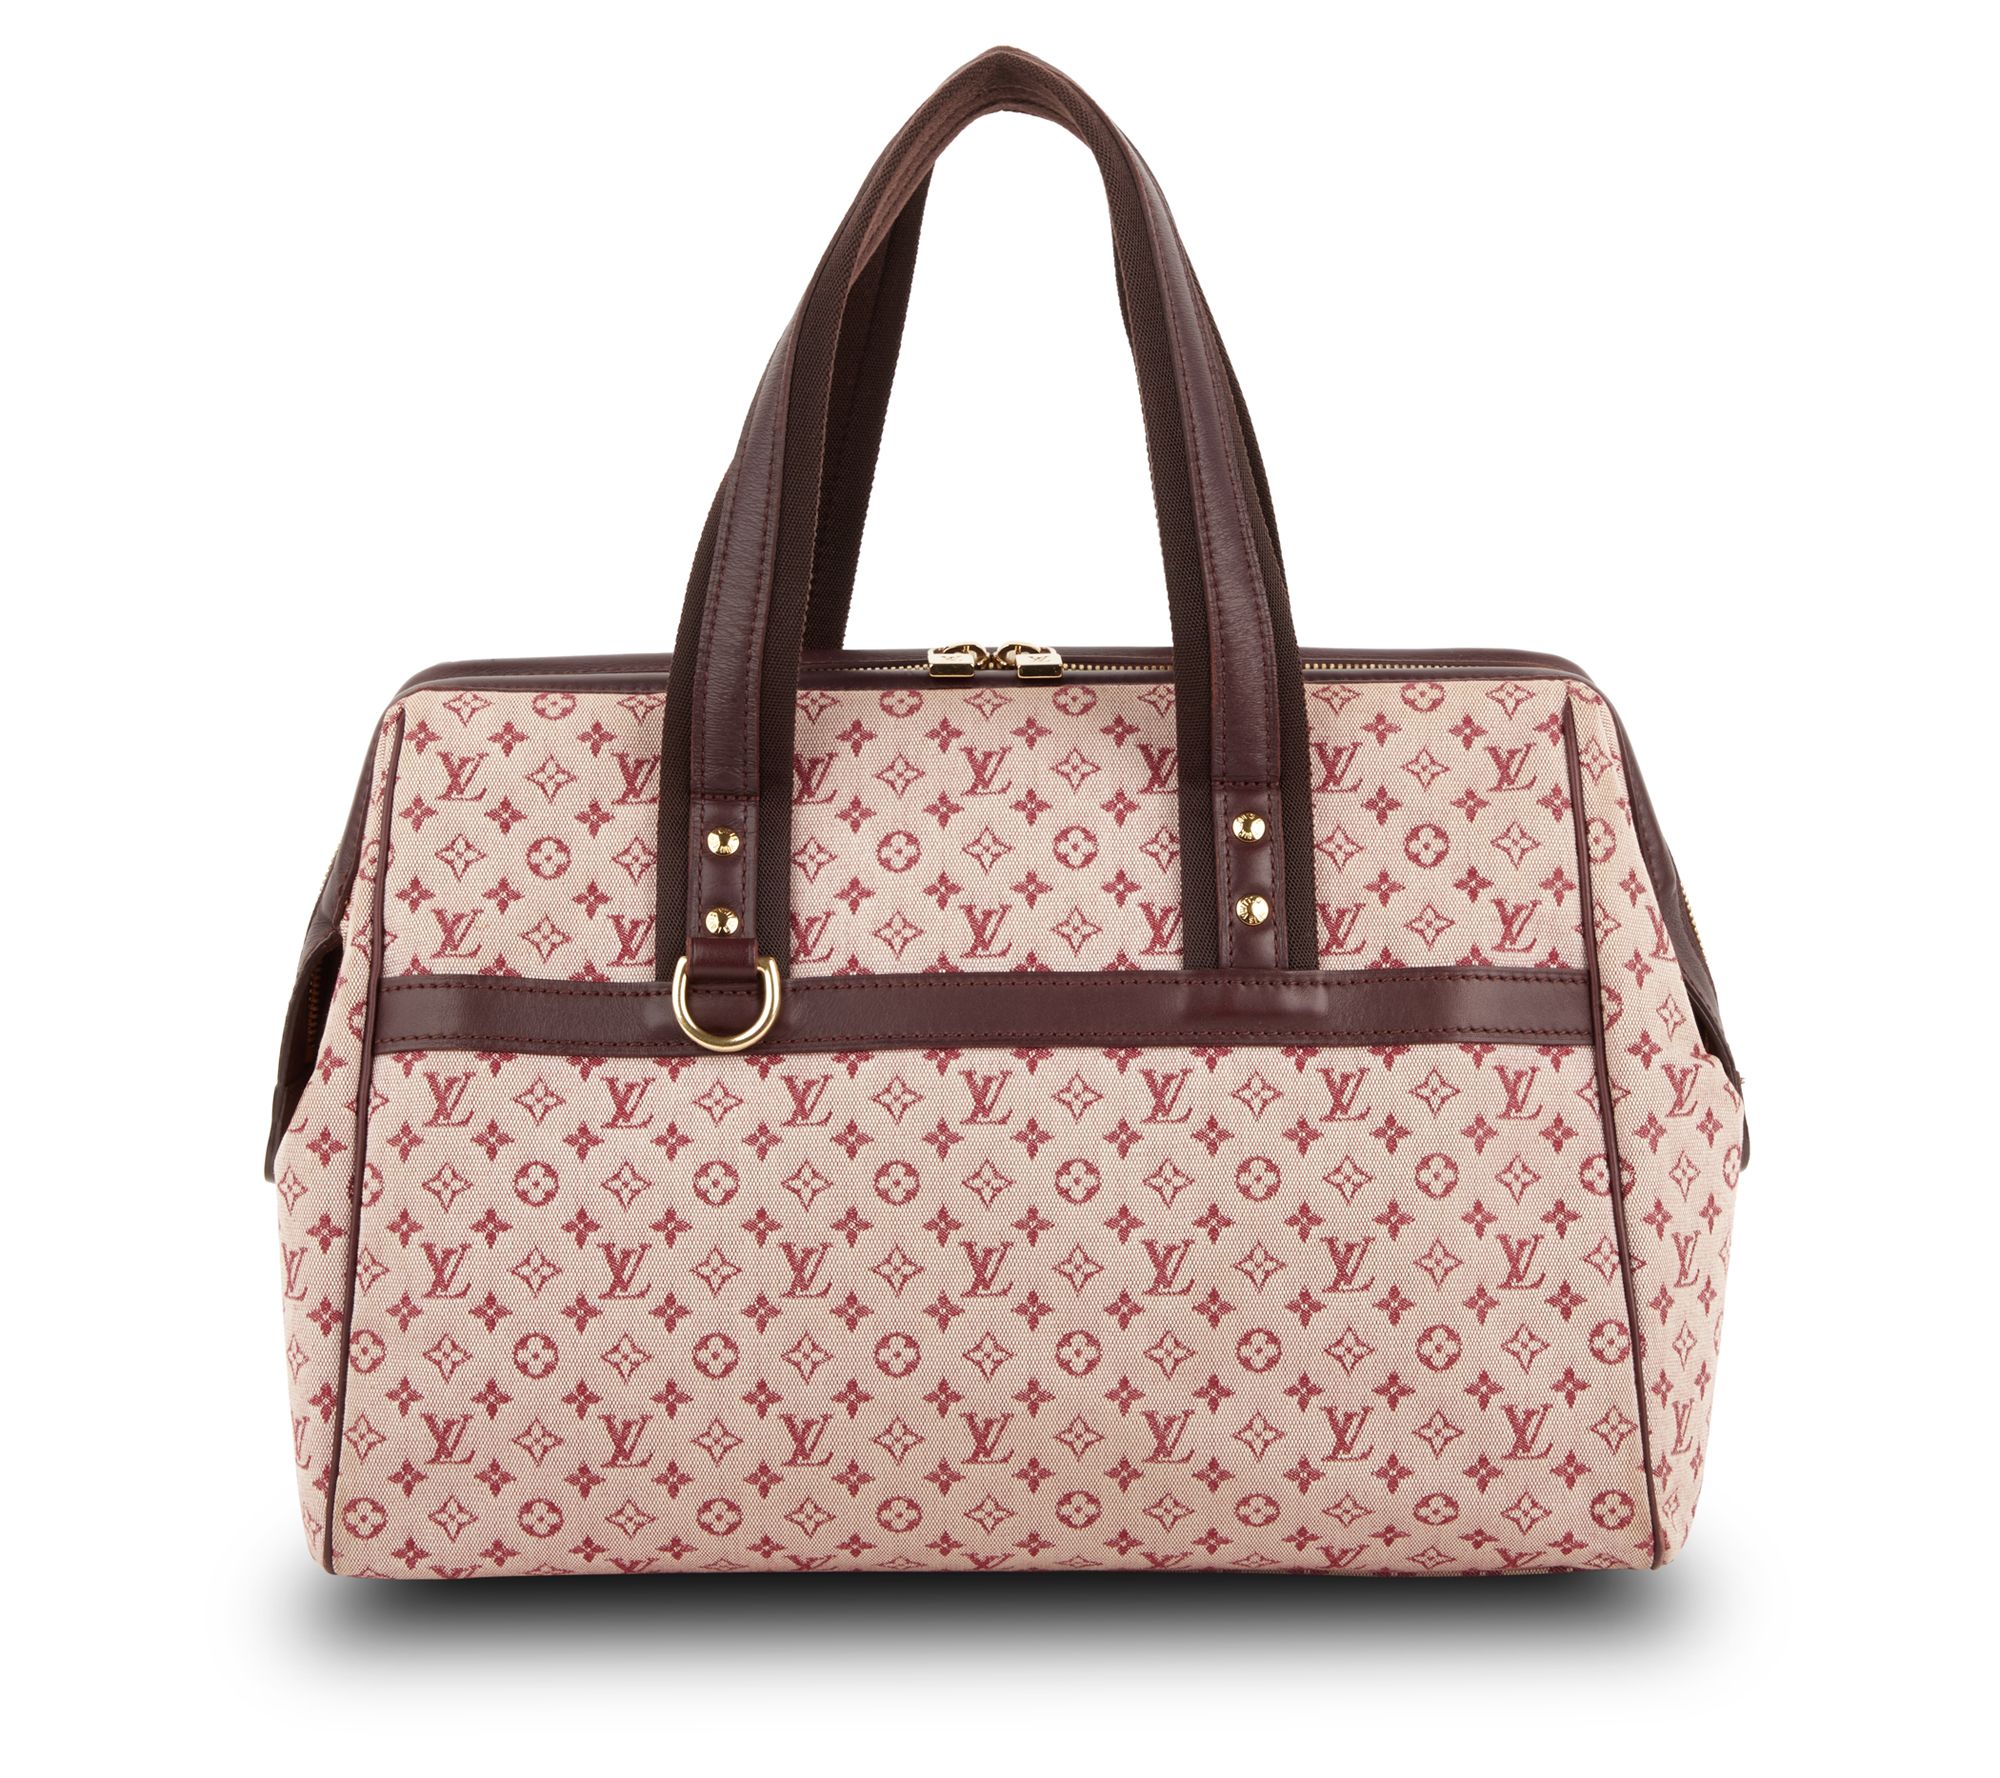 Louis Vuitton Bella Pink Canvas Handbag (Pre-Owned)